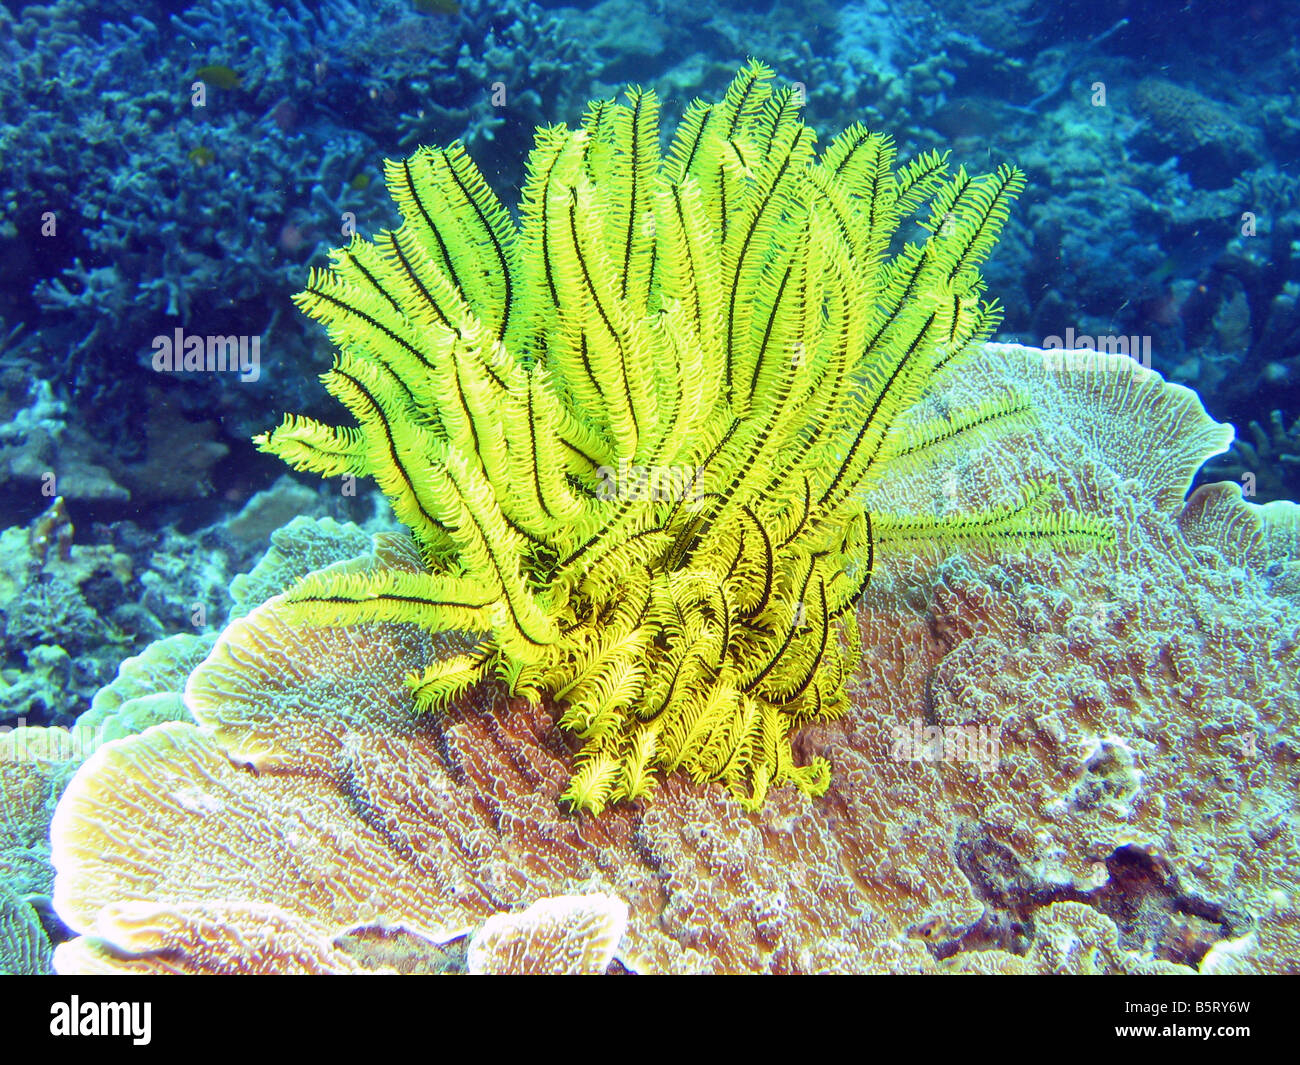 Plume jaune star coral (crinoidea) sur le récif au large de Lankayan Island, mer de Sulu, Sabah, Malaisie Banque D'Images